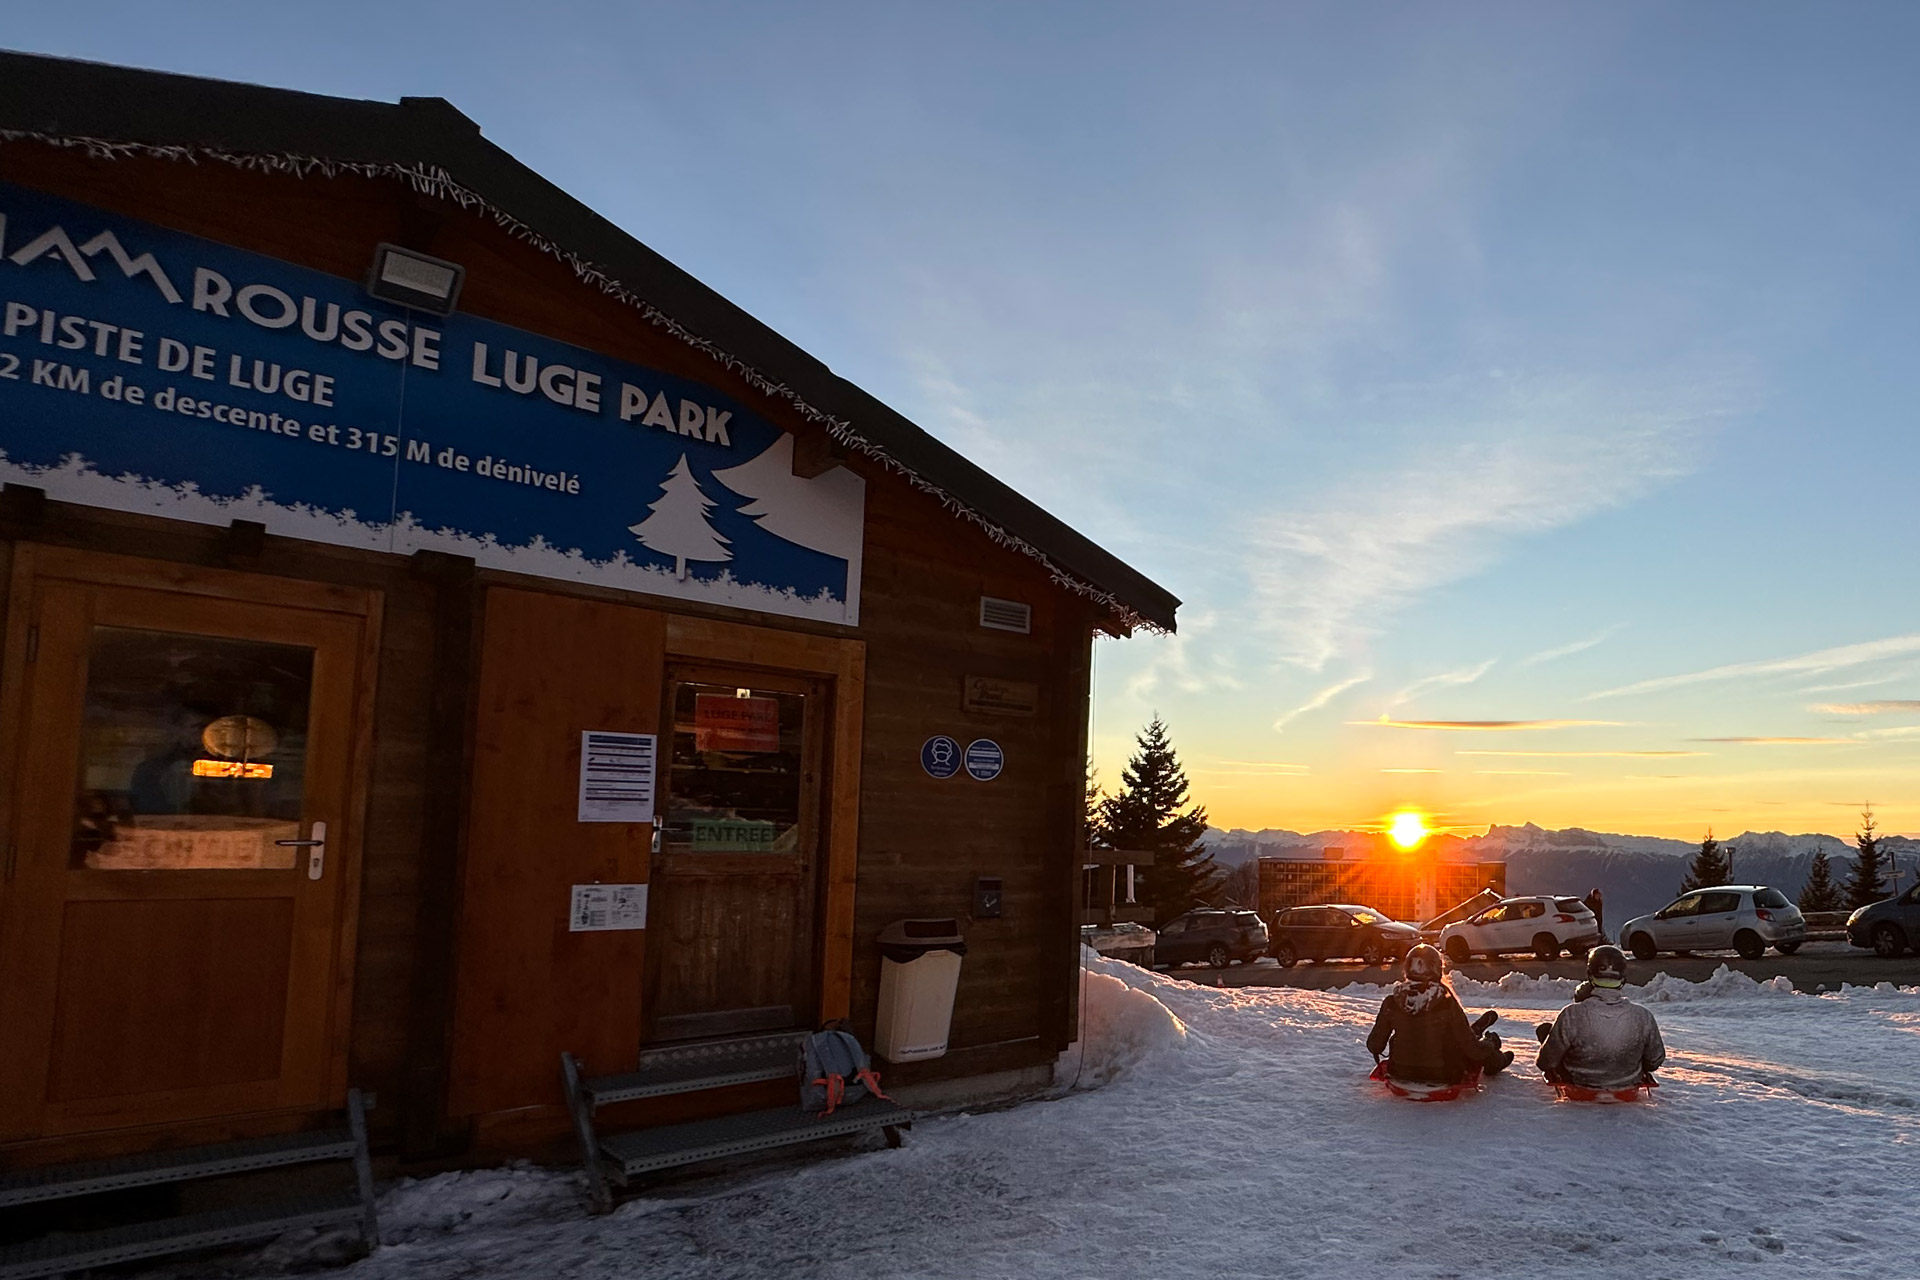 Chamrousse luge park piste luge bob sport coucher soleil station ski montagne grenoble isère alpes france - © Ophélie Guimet